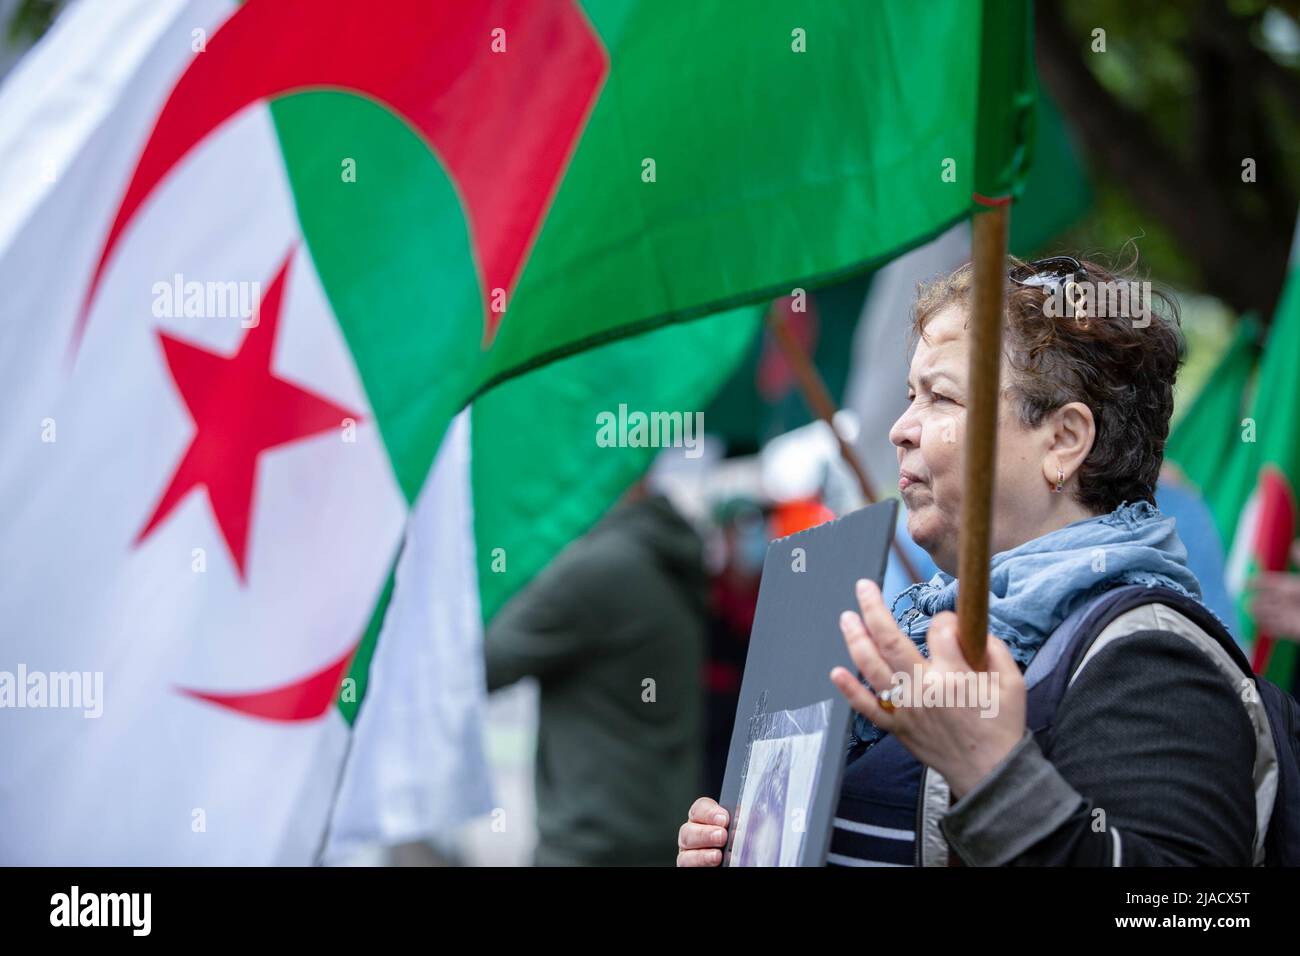 Leila Cheurfi sostiene la bandera argelina mientras canta los nombres de sus seres queridos secuestrados durante la protesta. Cuatro años después de la diáspora argelina, el movimiento Hirak sigue luchando por la democracia en Montreal. Organizado por Tous unis pour notre Algerie, cientos de manifestantes se reunieron frente al Consulado de Argelia para exigir la retirada de los actuales líderes políticos, encabezados por el presidente Abdelmadjid Tebboune. Citando la corrupción crónica y la falta de resoluciones previsables, los manifestantes llamaron al gobierno un gobierno mafioso. Foto de stock